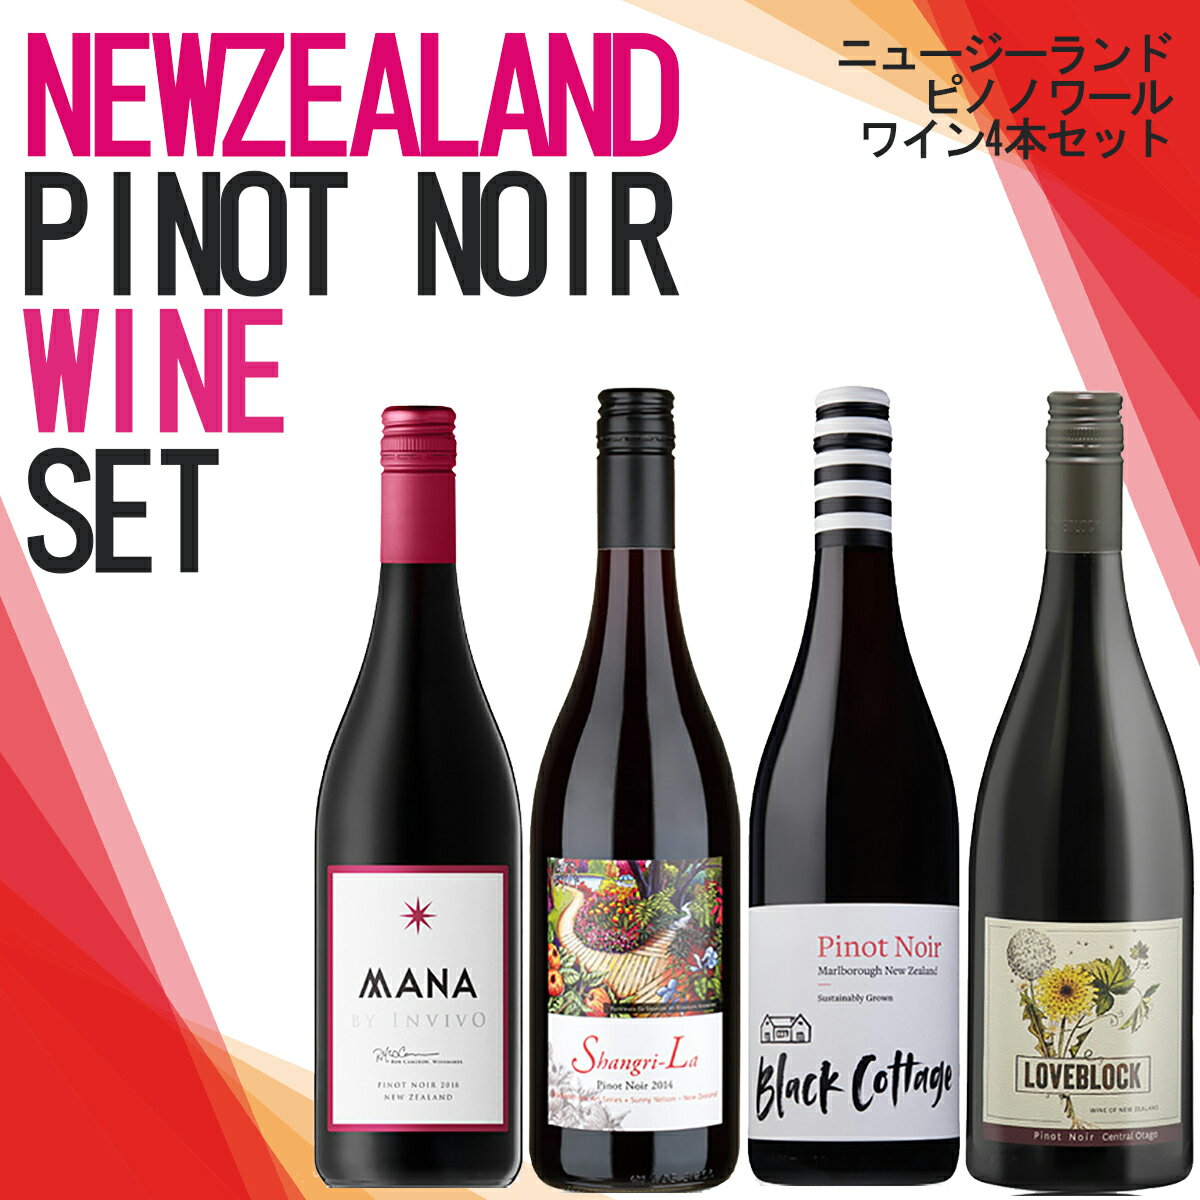 ニュージーランドピノノワール4本ワインセット ニュージーランドワイン ニュージーランド産ワイン 辛口 赤ワイン 飲み比べセット 家飲み 宅飲み ワインセット ワイン ピノノワール wine wain プレゼント ギフト 母の日